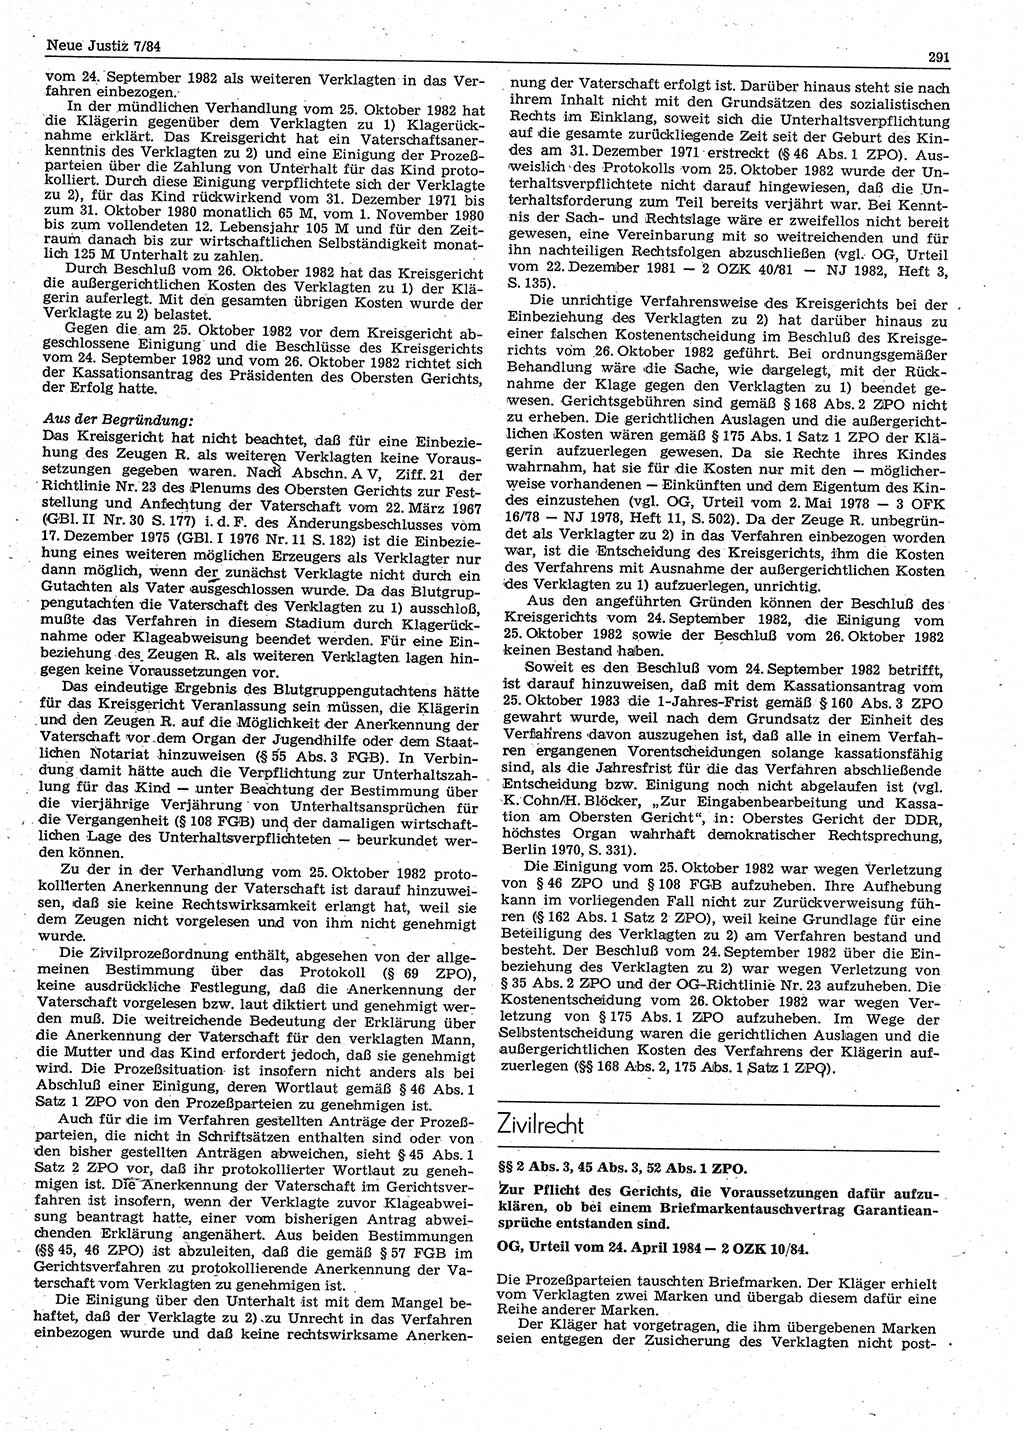 Neue Justiz (NJ), Zeitschrift für sozialistisches Recht und Gesetzlichkeit [Deutsche Demokratische Republik (DDR)], 38. Jahrgang 1984, Seite 291 (NJ DDR 1984, S. 291)